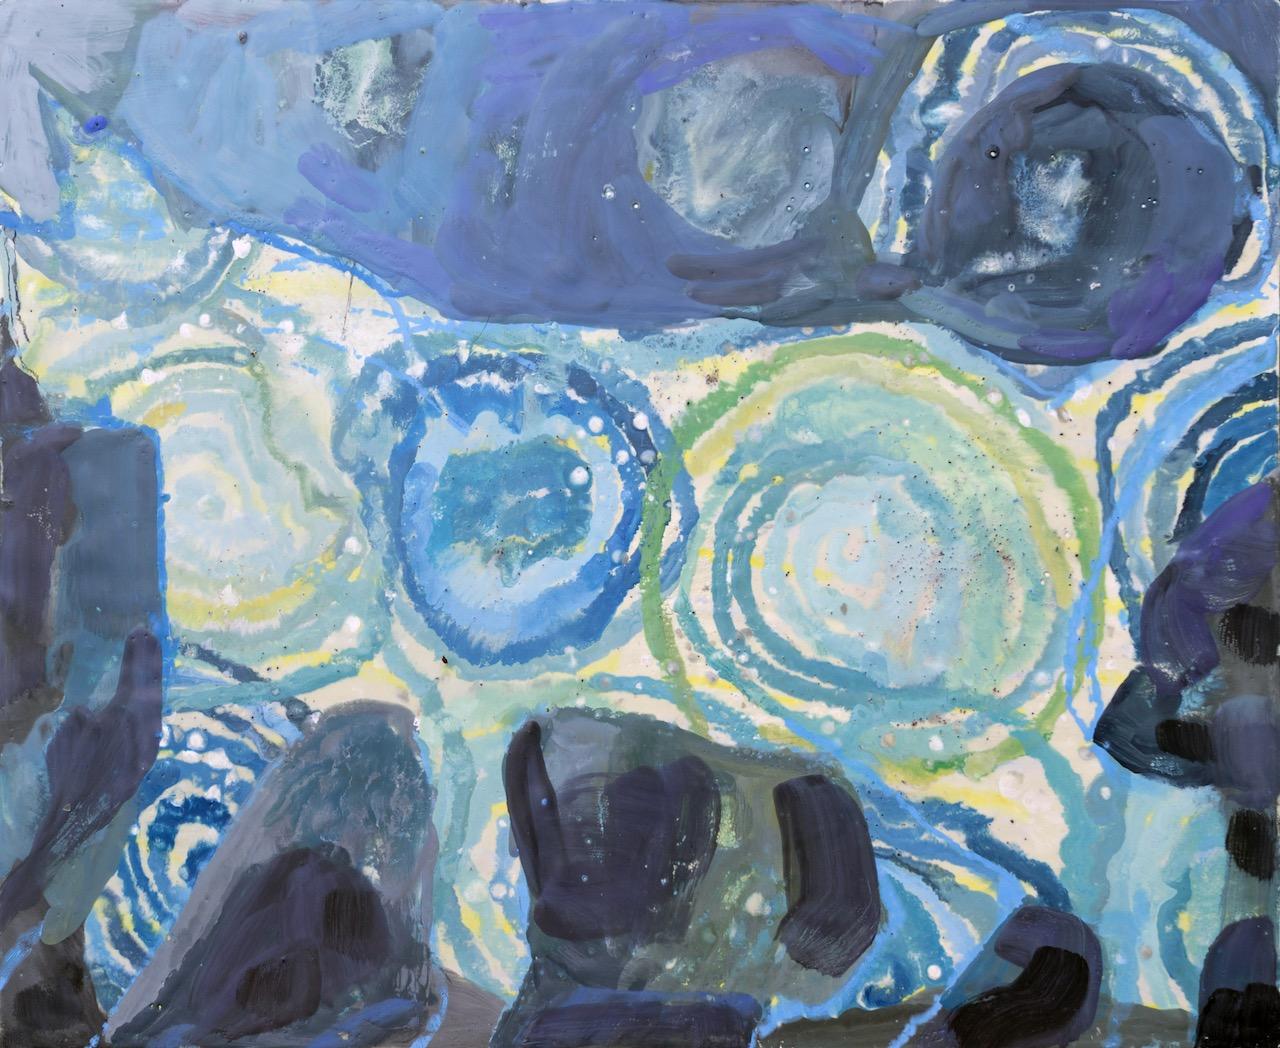 Animal Painting Adair Peck - « Midnight Stroll », peinture abstraite en techniques mixtes d'un chat sur fond bleu